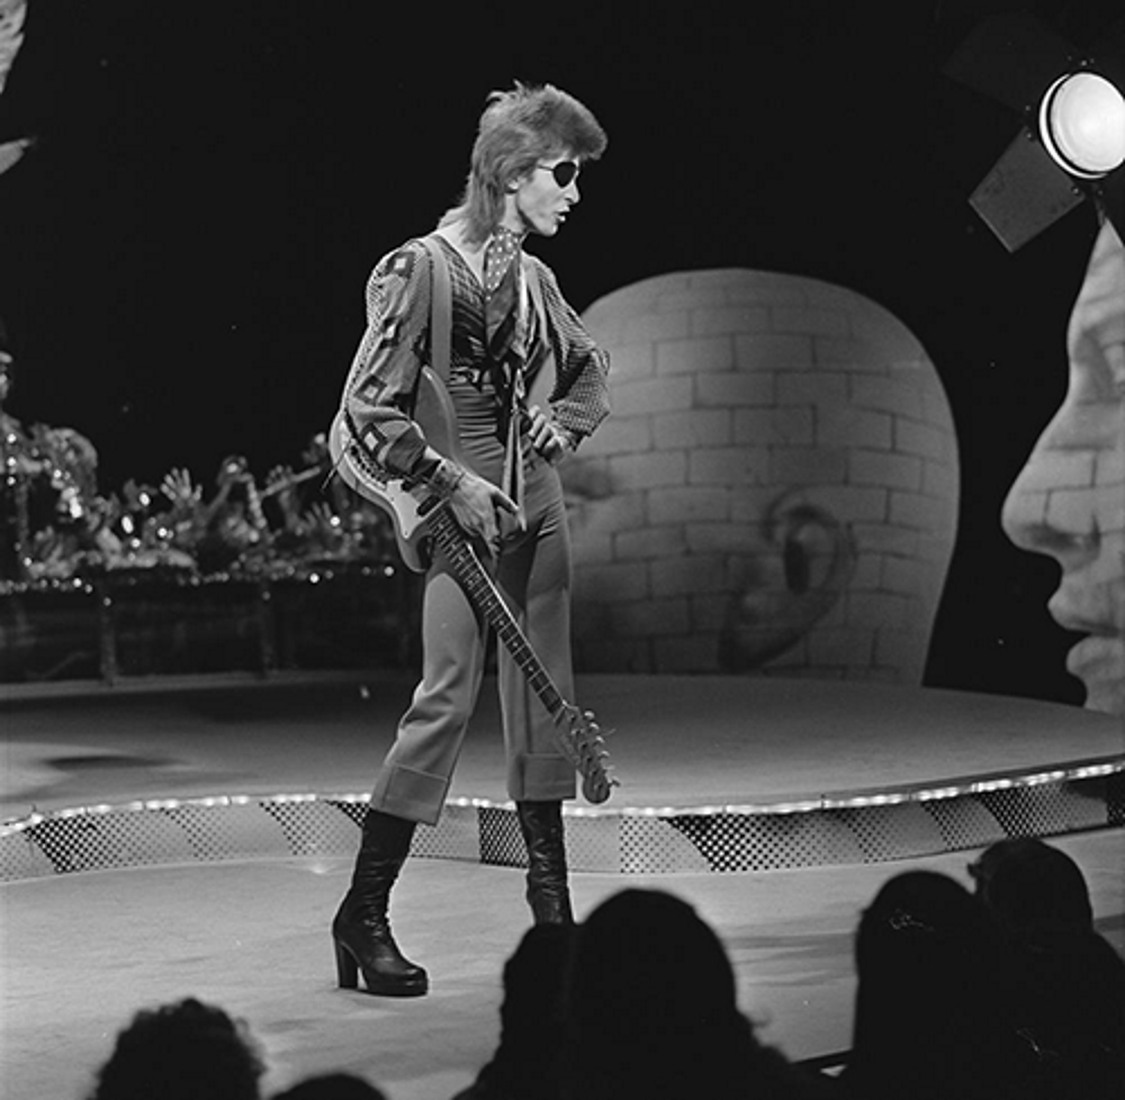 David Bowie arribarà al Museu del Disseny per primavera